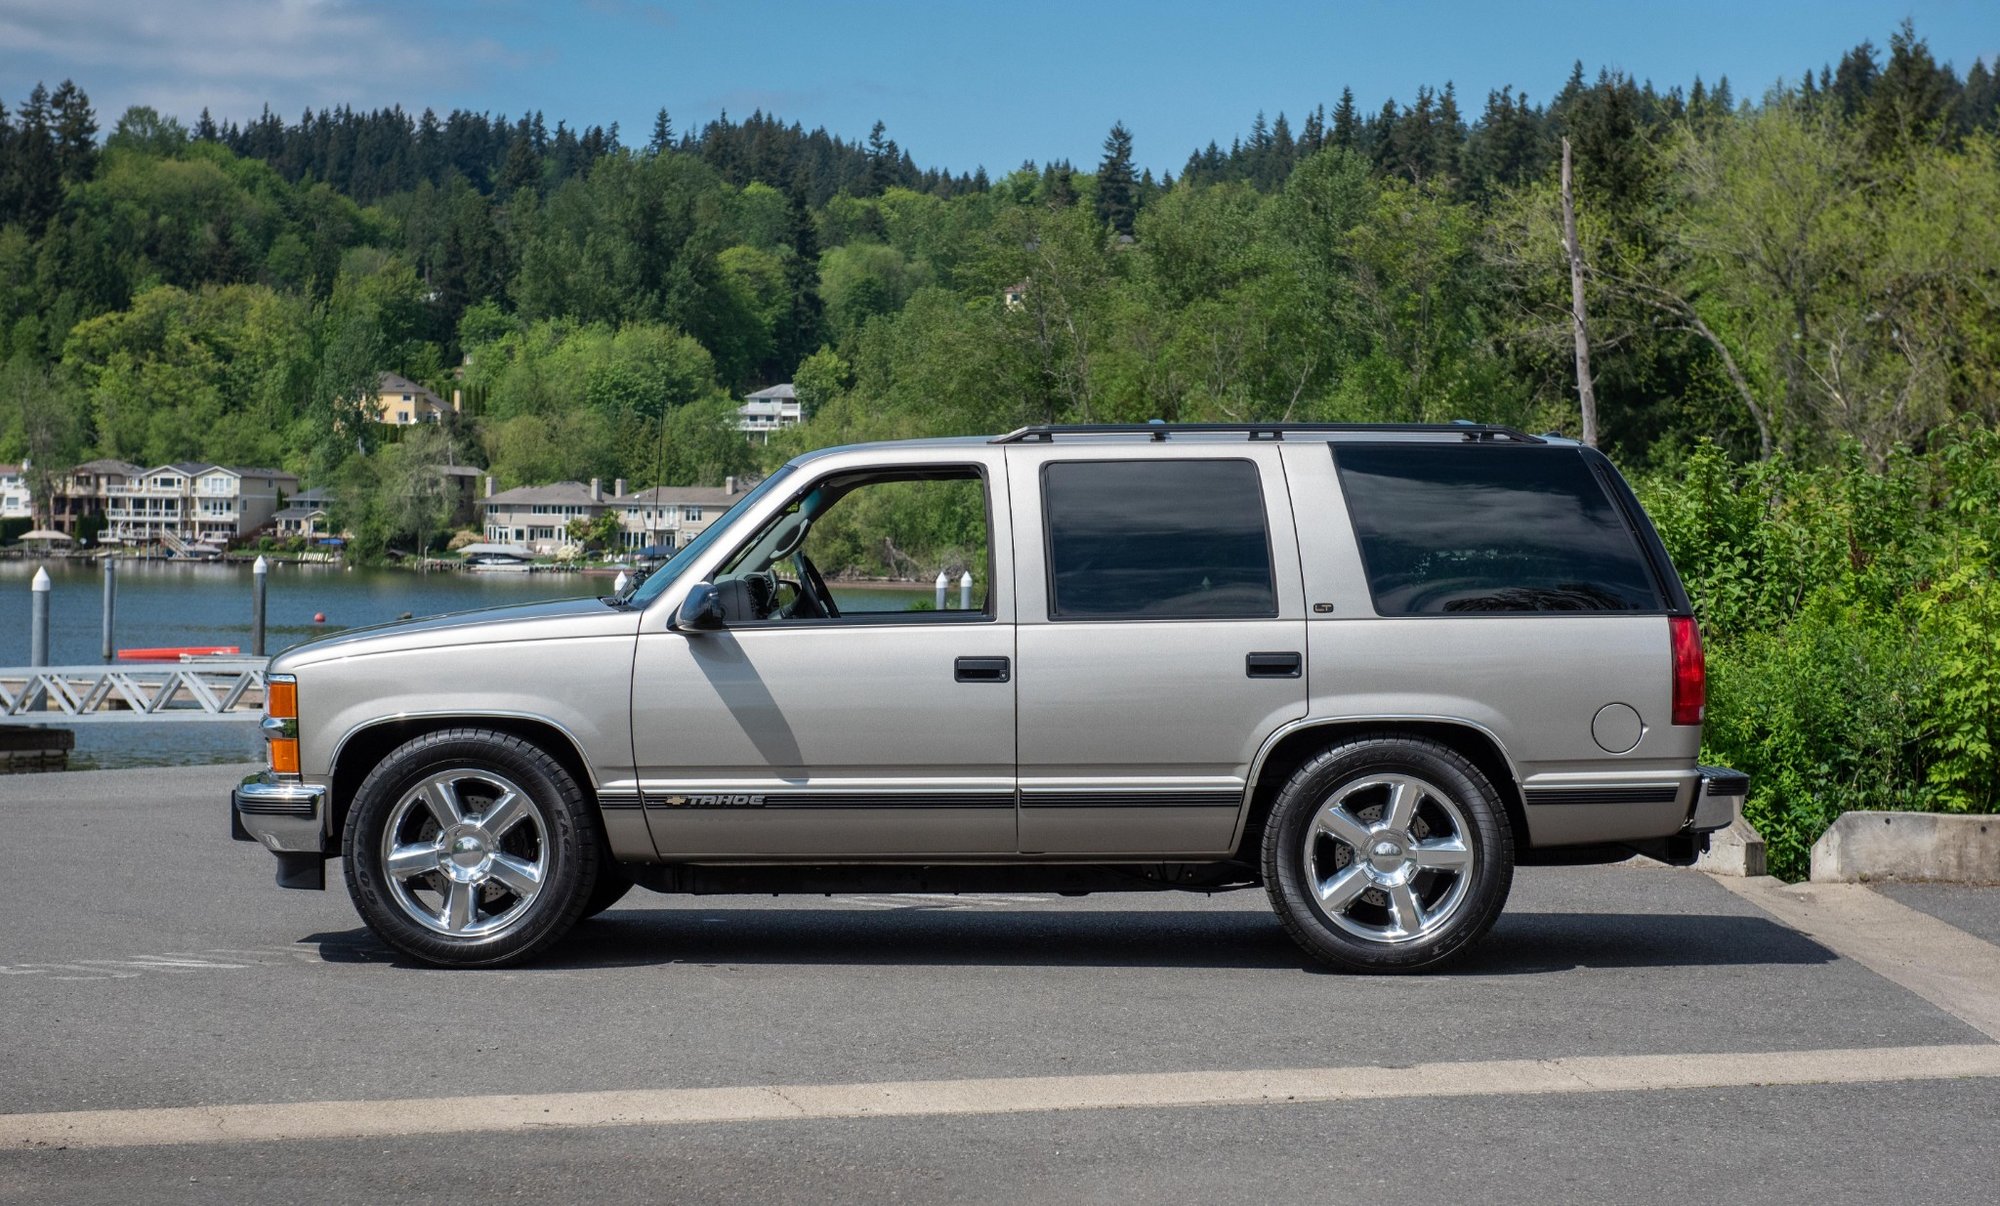 Chevrolet Tahoe s osmiválcem LS9 je dokonale nenápadným SUV s monstrózním výkonem